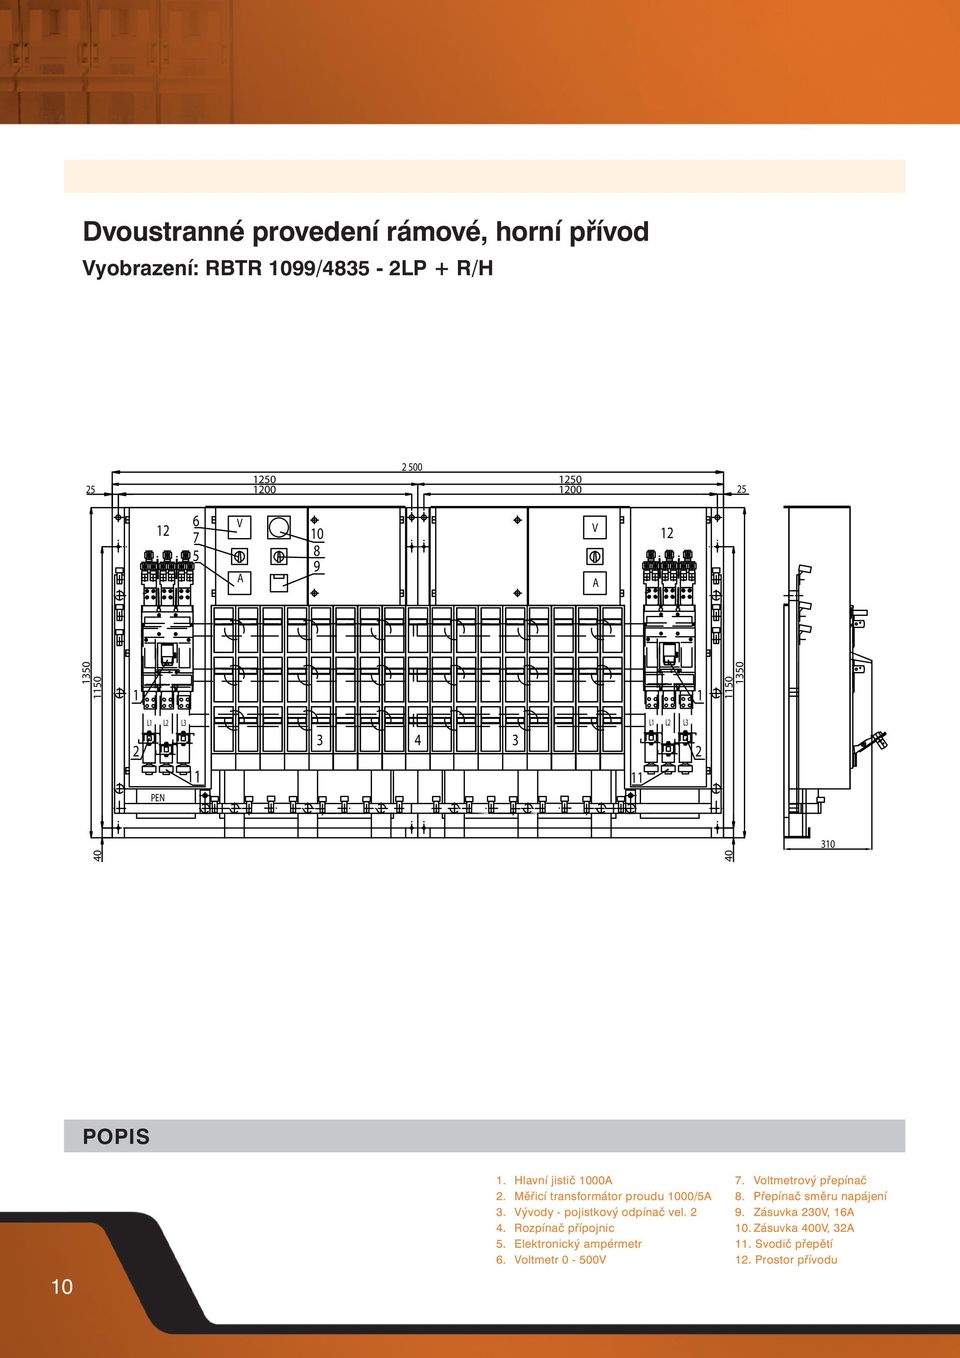 Měřicí transformátor proudu 1000/5 3. ývody - pojistkový odpínač vel. 2 4. Rozpínač přípojnic 5. Elektronický ampérmetr 6.